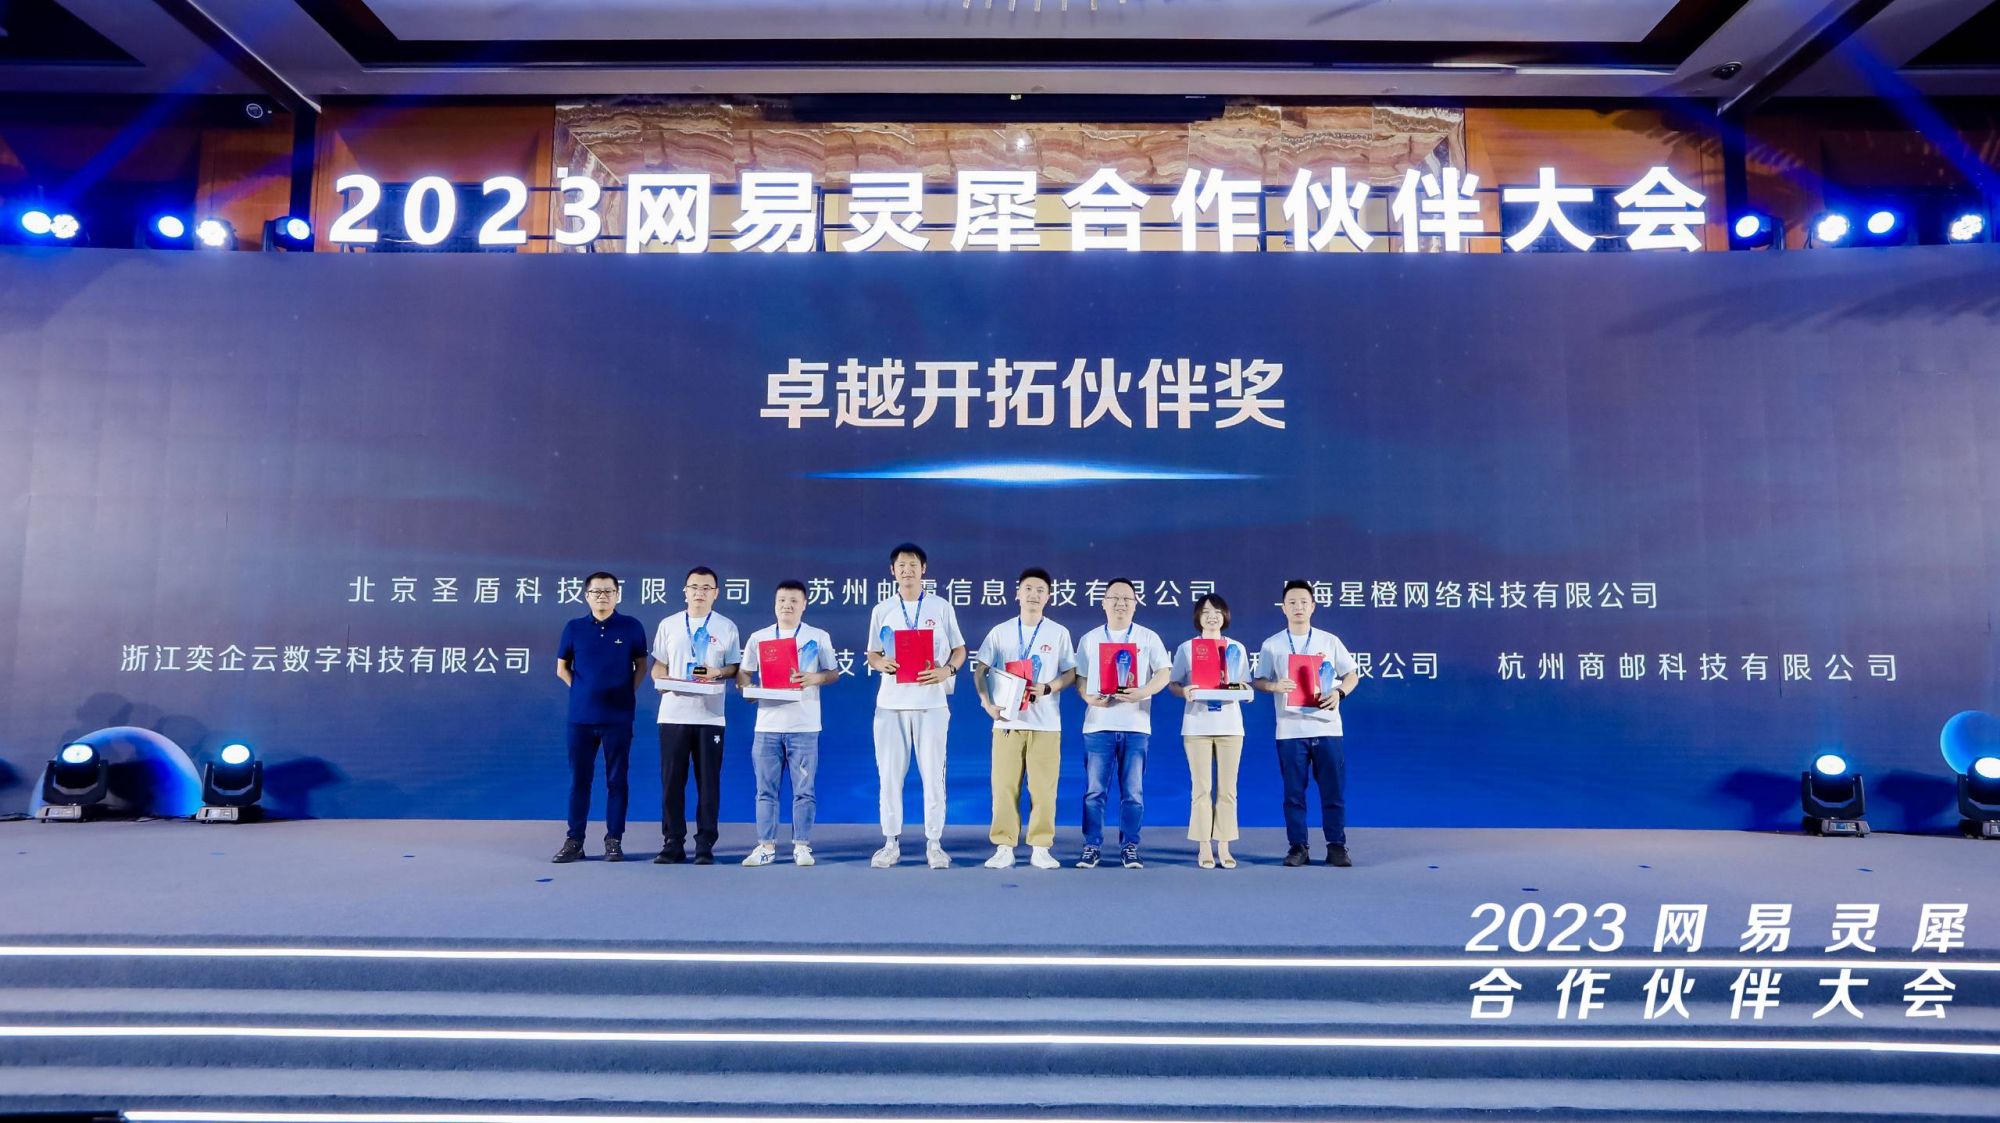 热烈庆祝北京圣盾科技有限公司荣获2022年度网易企业邮箱卓越开拓奖